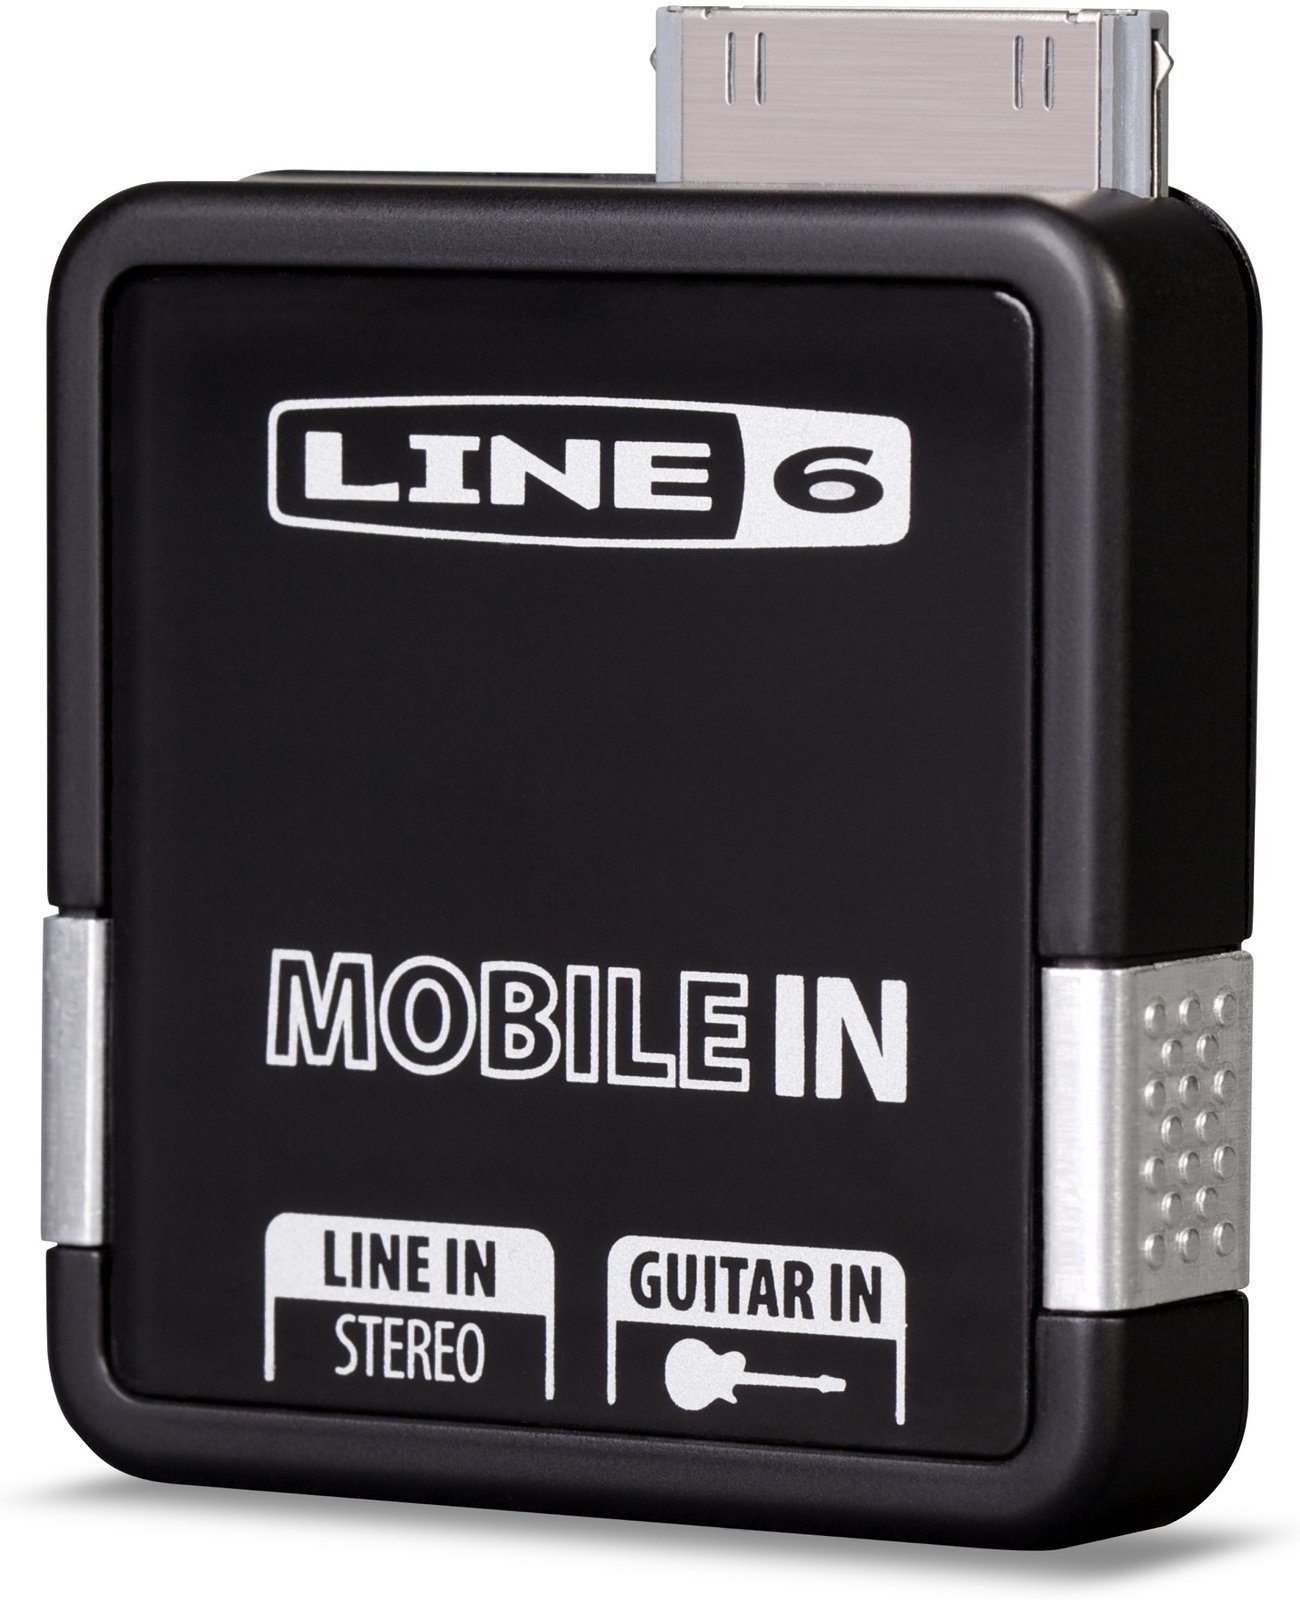 Studiolaitteet Line6 Mobile In